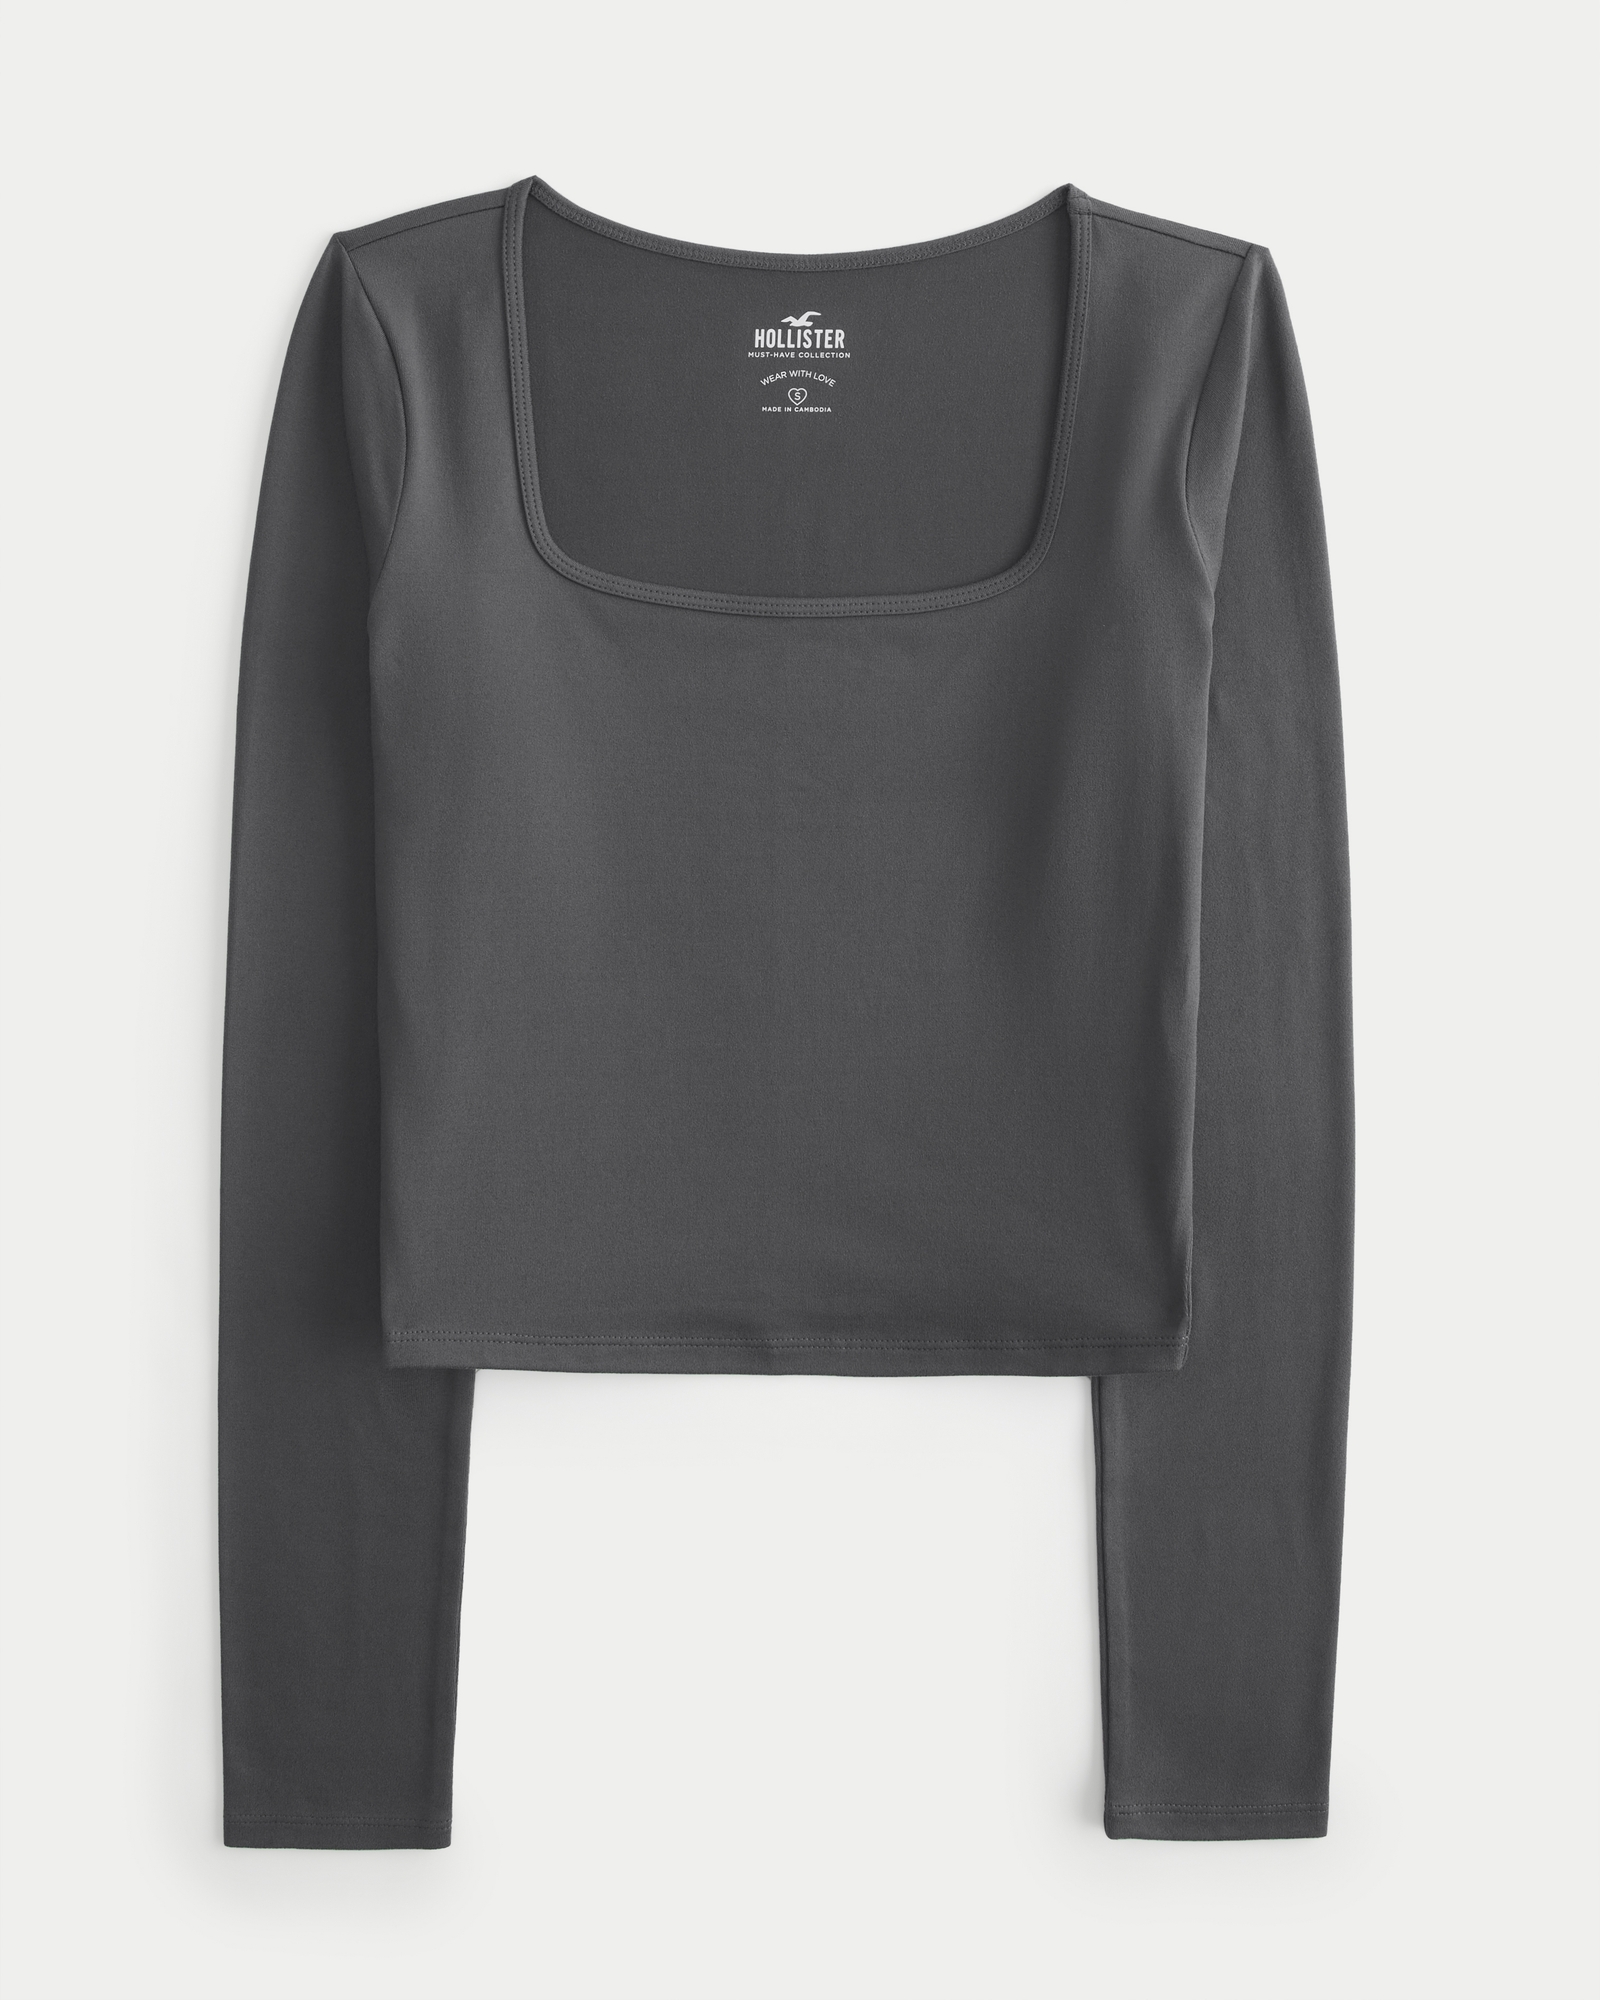 Hollister Women's Long Sleeve Button Down Shirt Woven Seagull Logo Collar Size  L